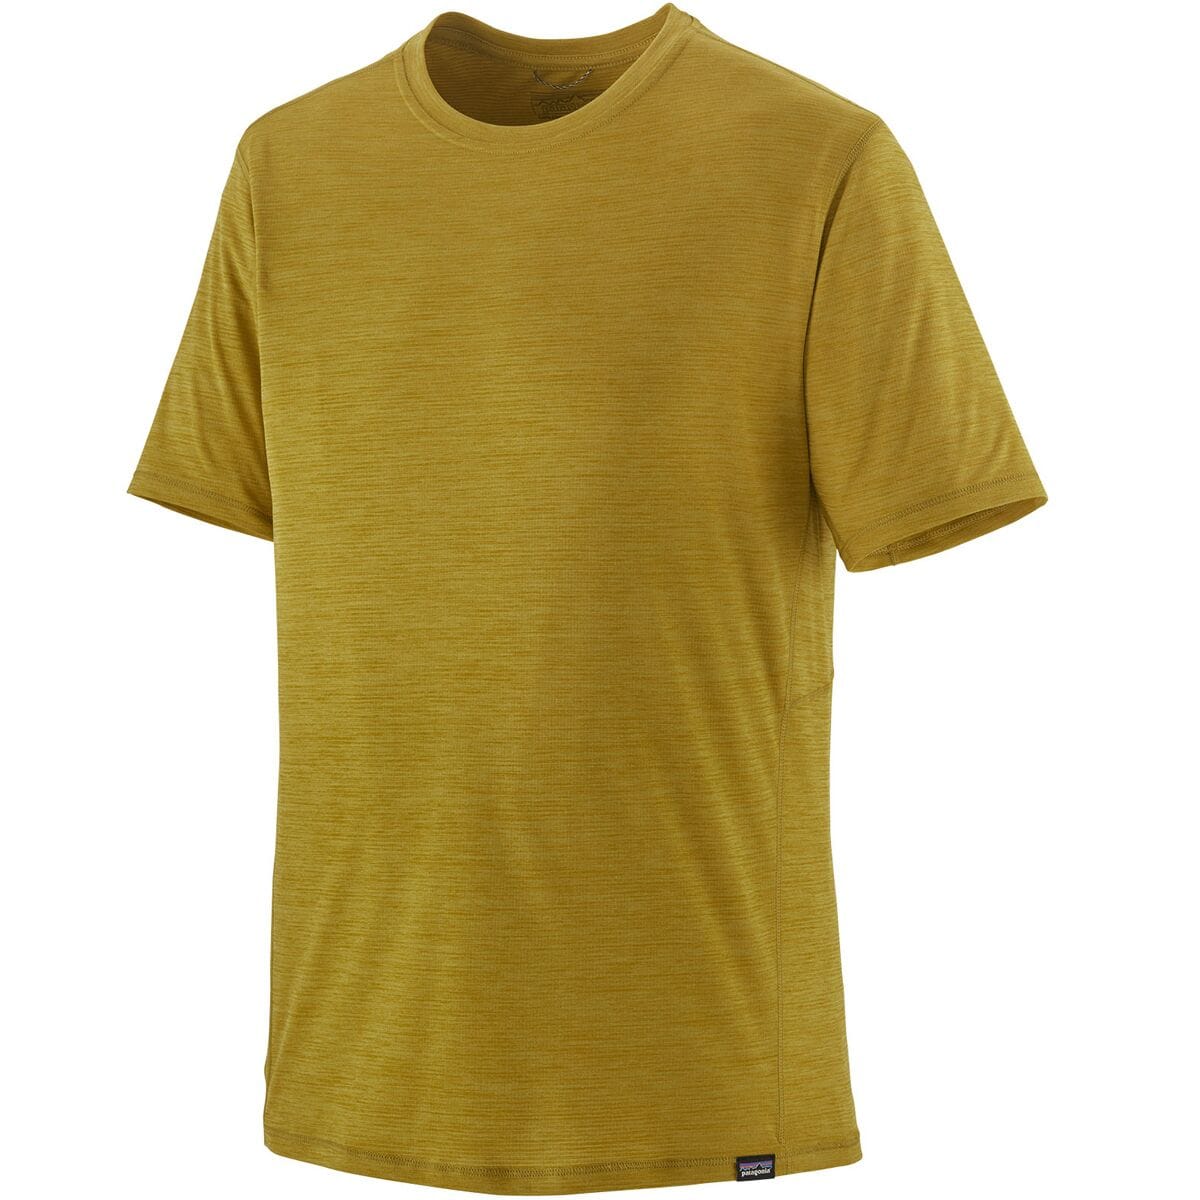 Capilene Cool Lightweight Short-Sleeve Shirt - Men